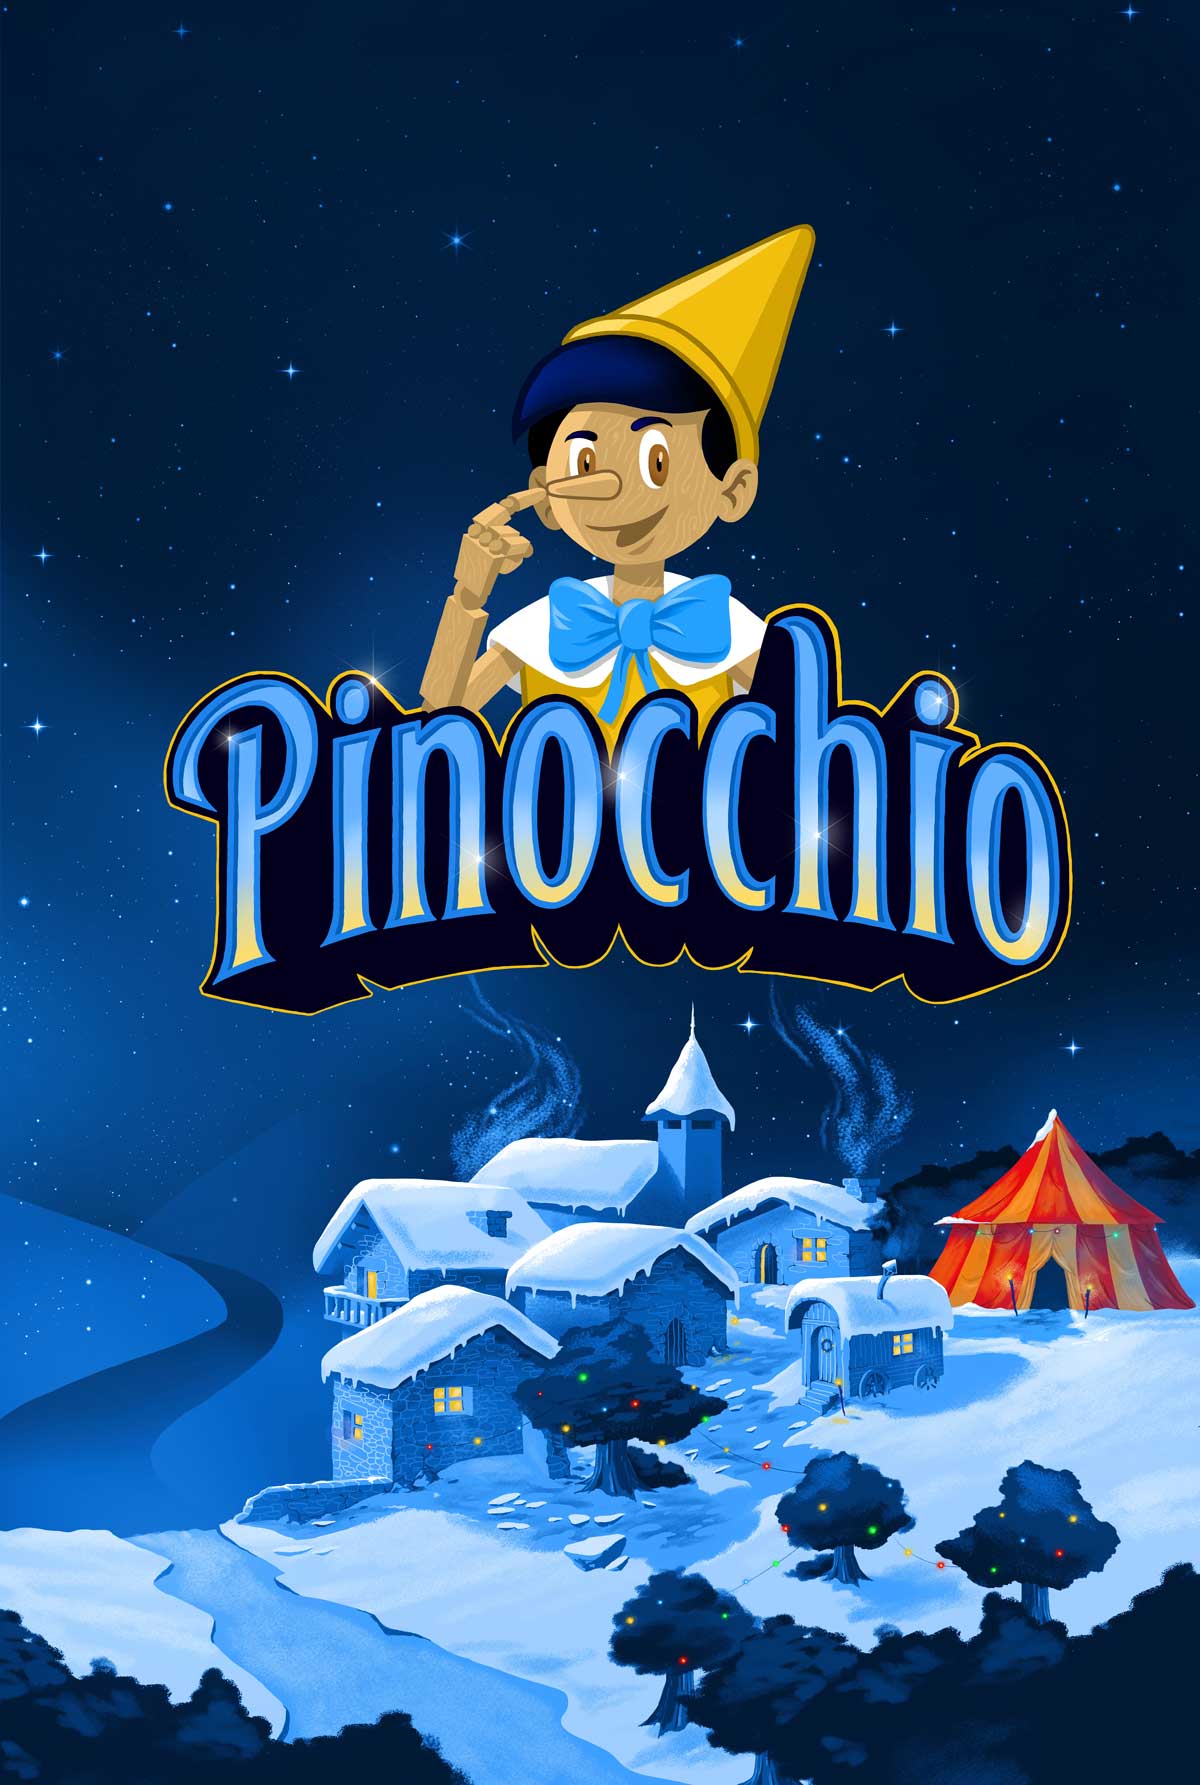 Affiche Pinocchio